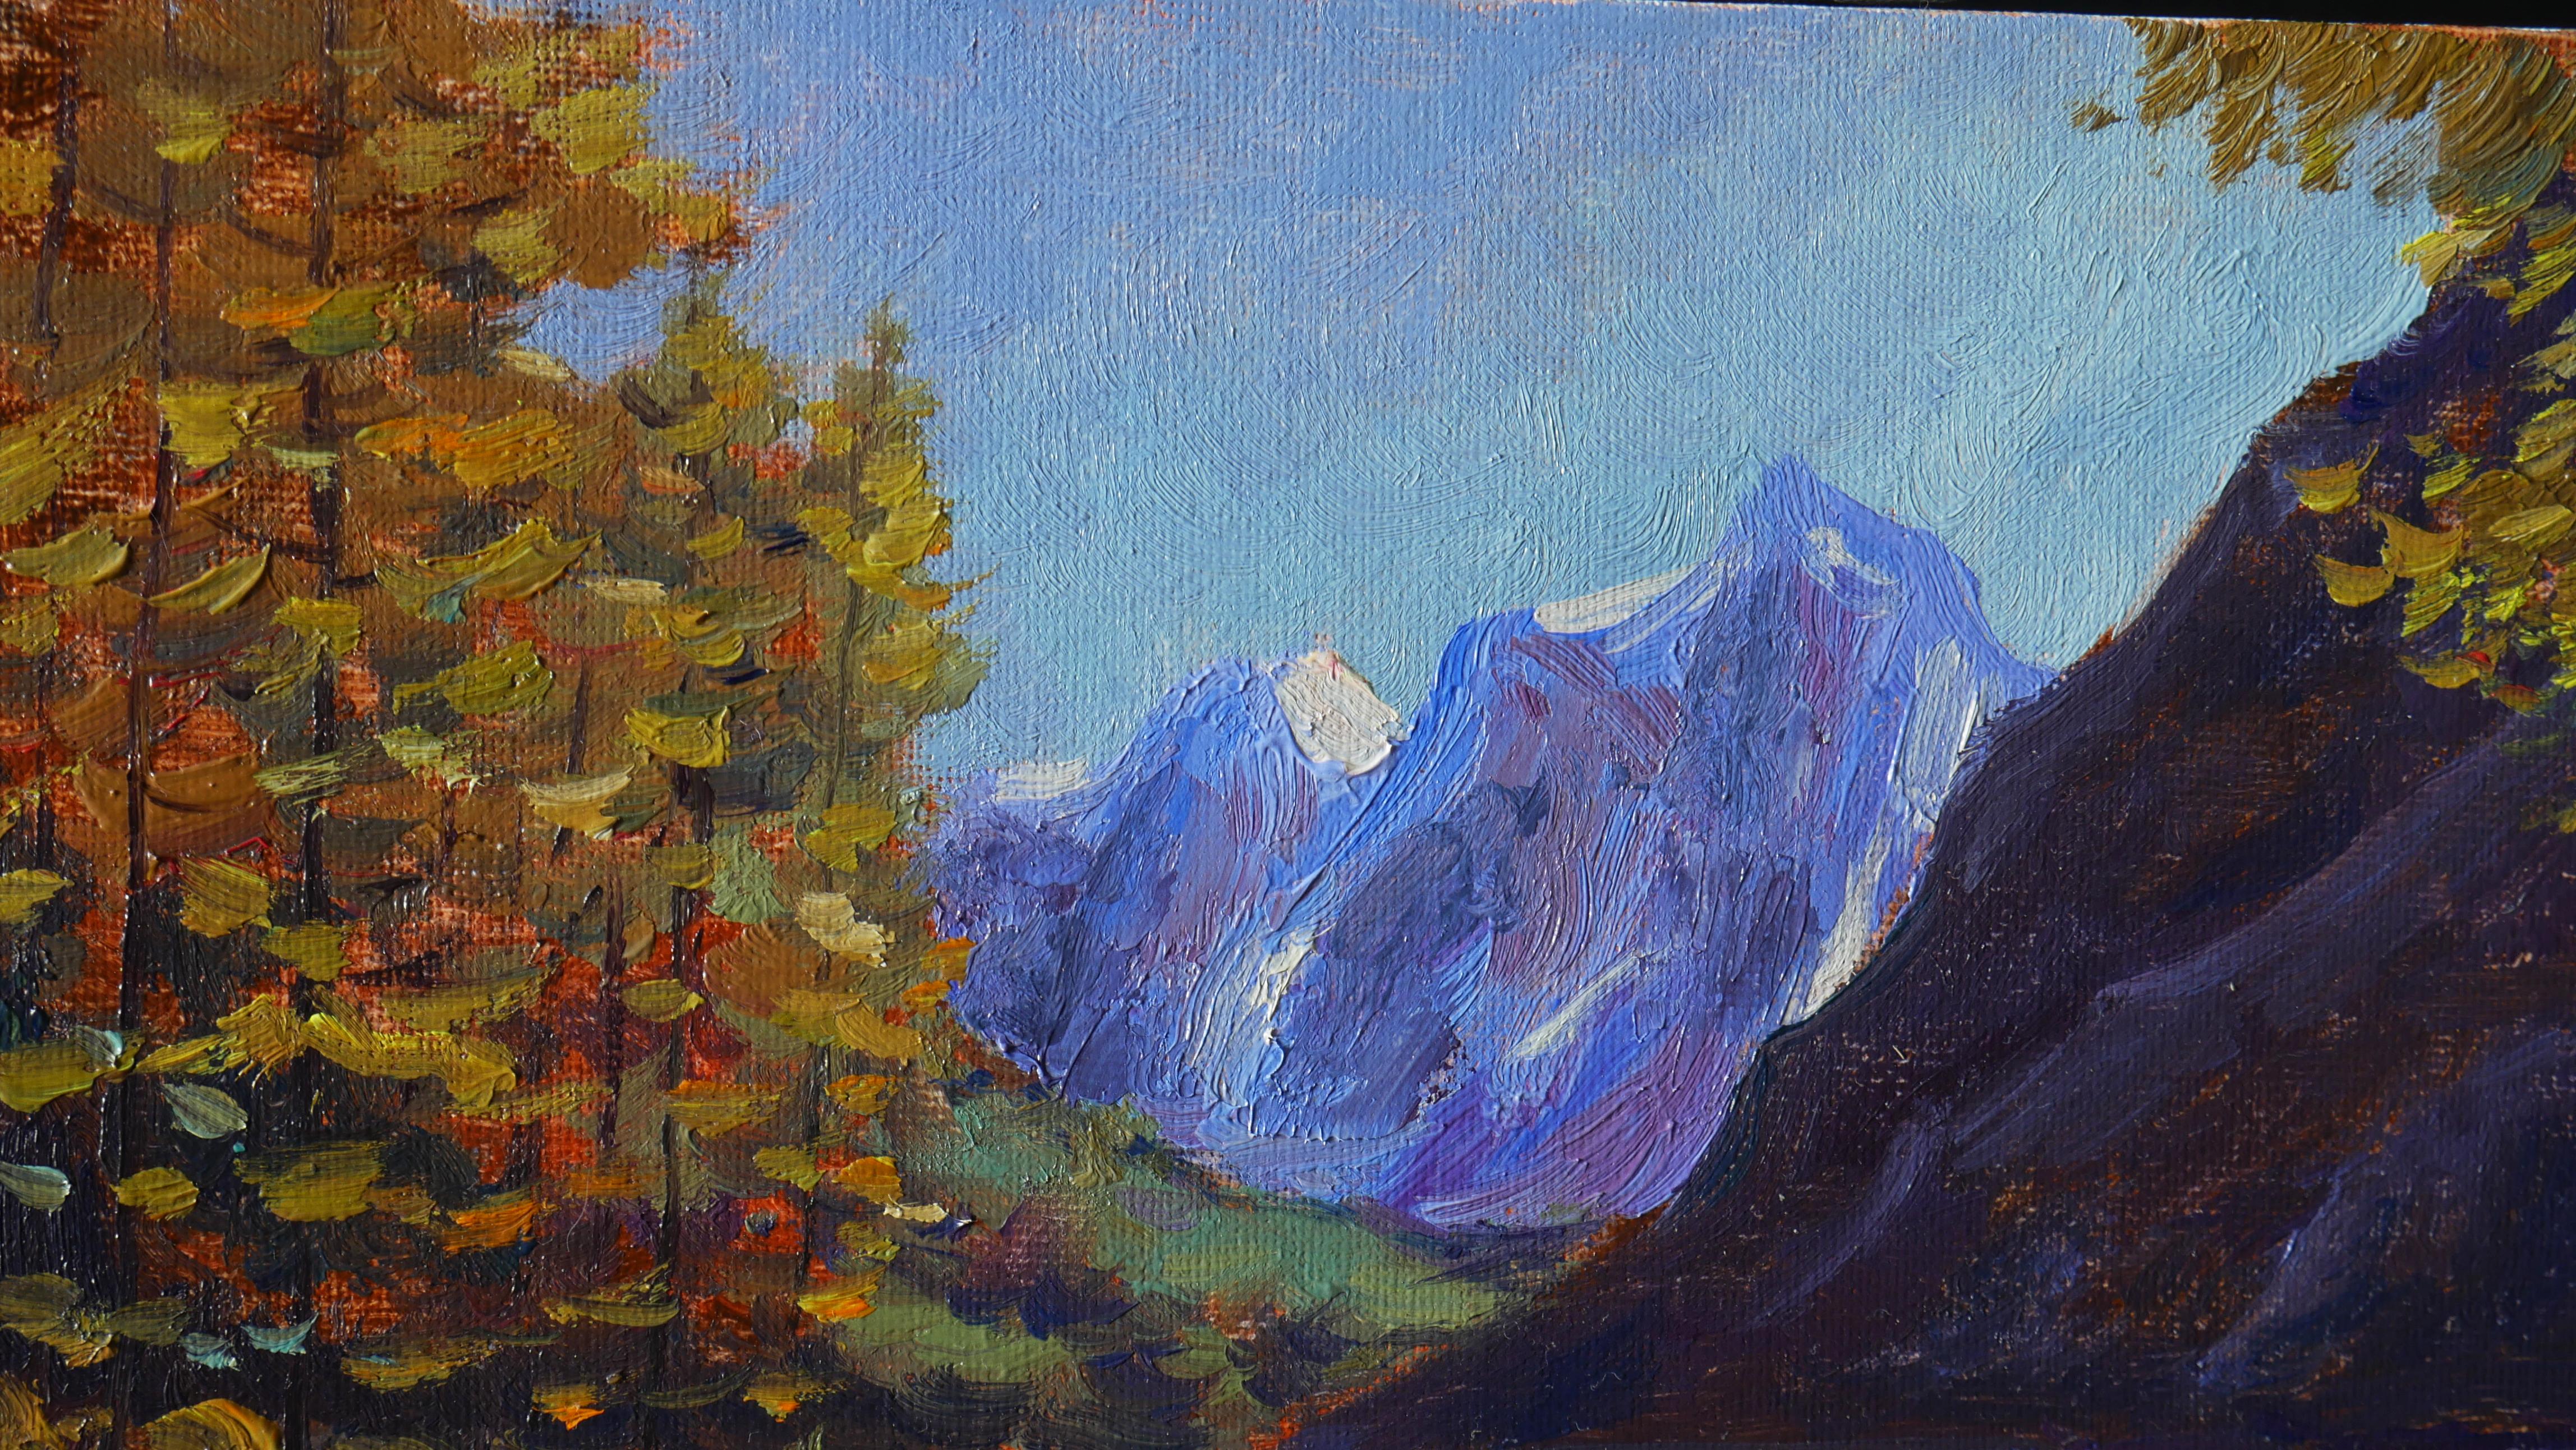 Das sonnige impressionistische Gemälde mit einem See, einem herbstlichen Wald und schönen Bergen ist eine schöne Wanddekoration. Das Gemälde ist voll von verschiedenen Farben, Kombinationen von warmen und kalten Tönen werden vom Künstler